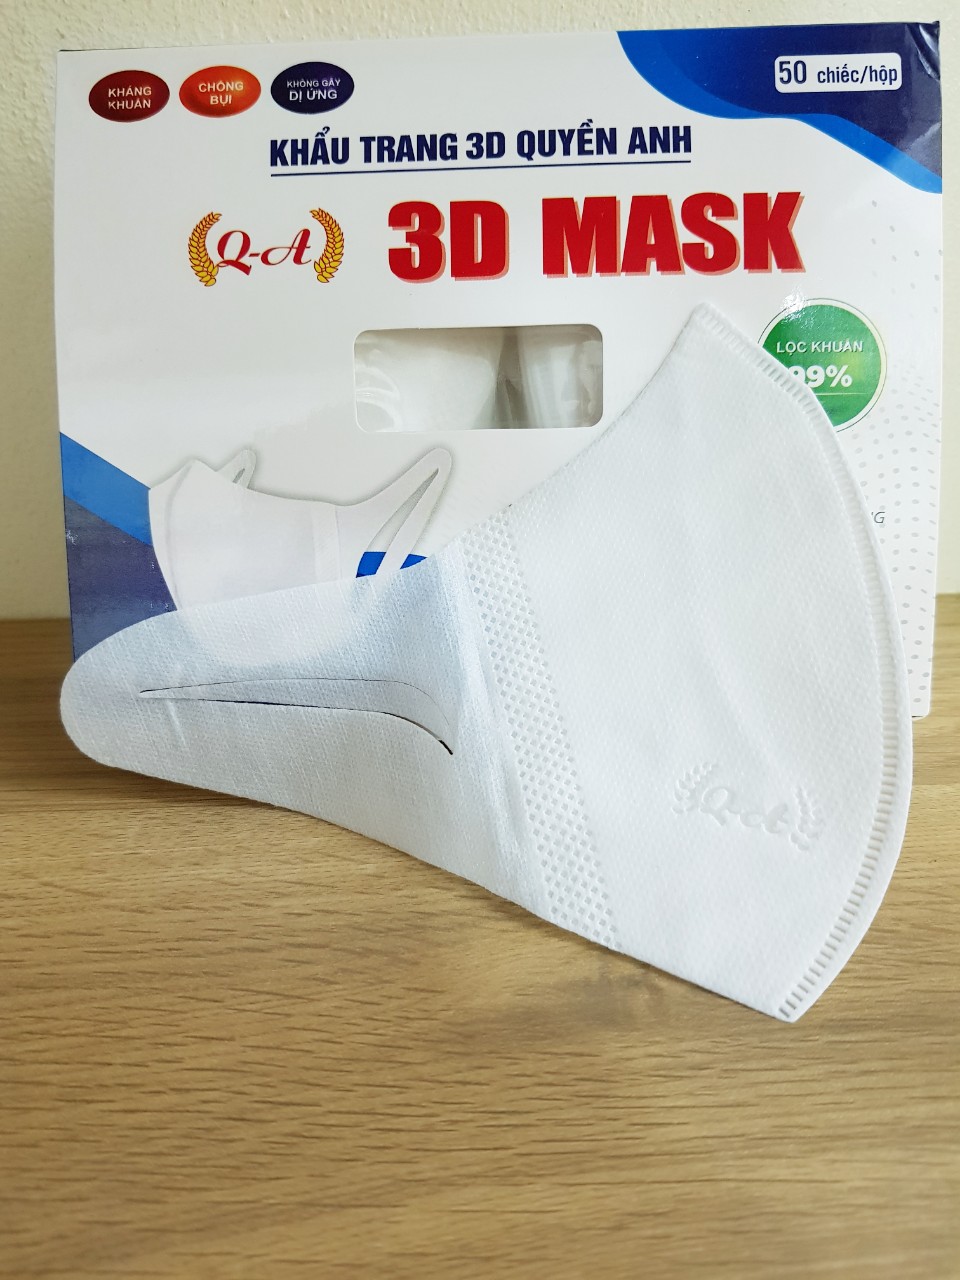 Hộp 50 Chiếc Khẩu Trang 3D Mask Quyền Anh